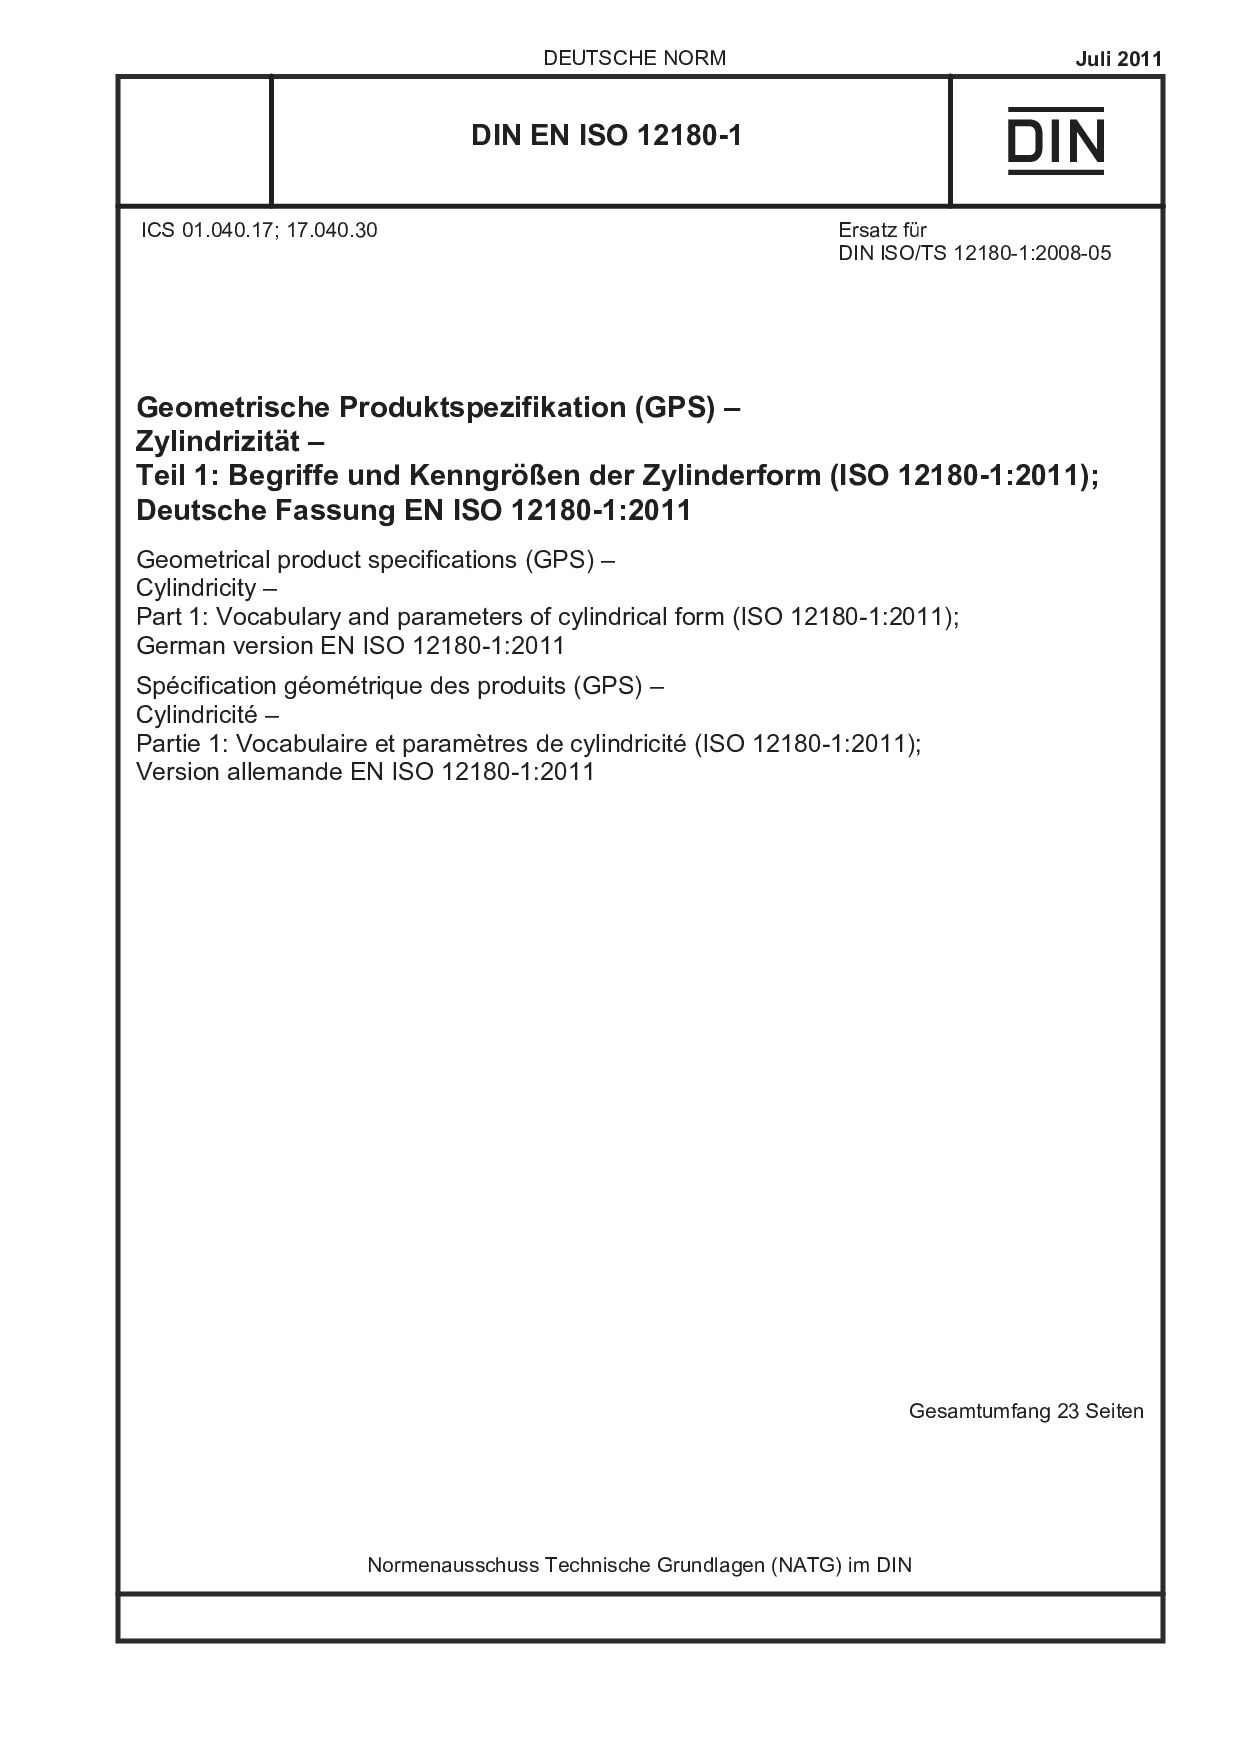 DIN EN ISO 12180-1:2011-07